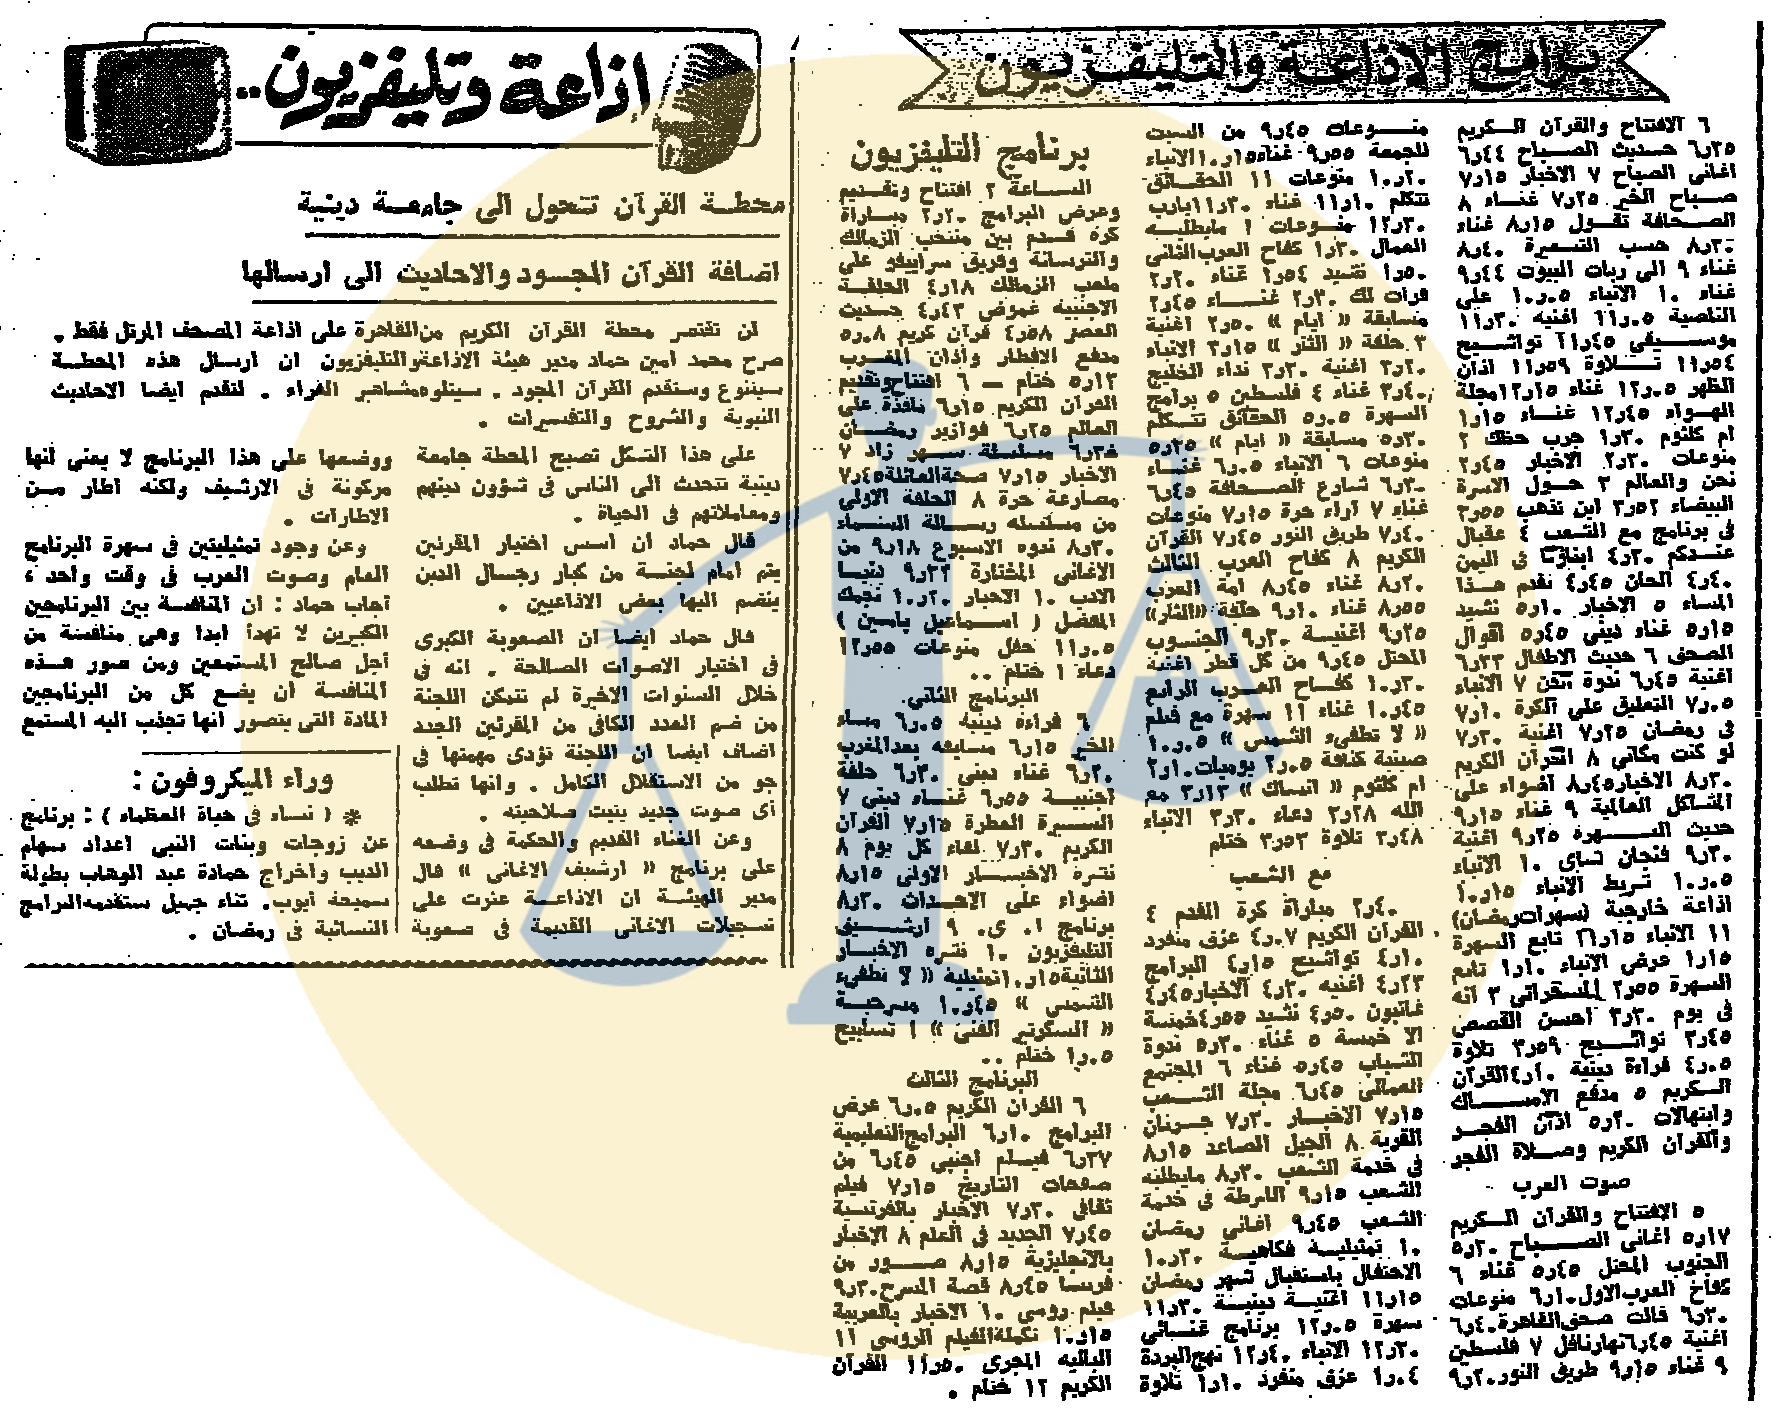 التوك شو في 1 رمضان 1385 الموافق 23 ديسمبر 1965